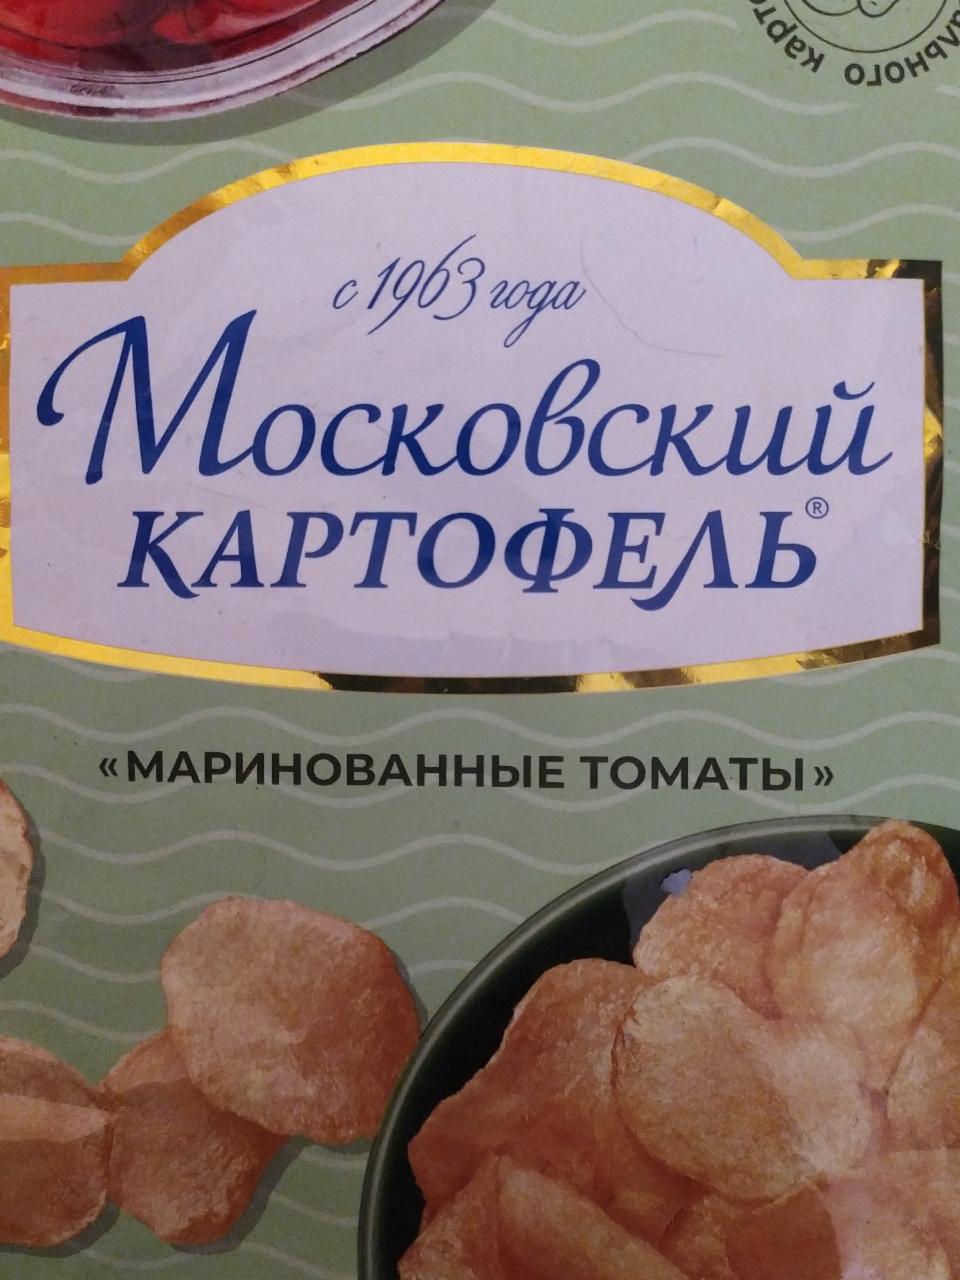 Фото - чипсы картофельные со вкусом маринованные томаты Московский картофель